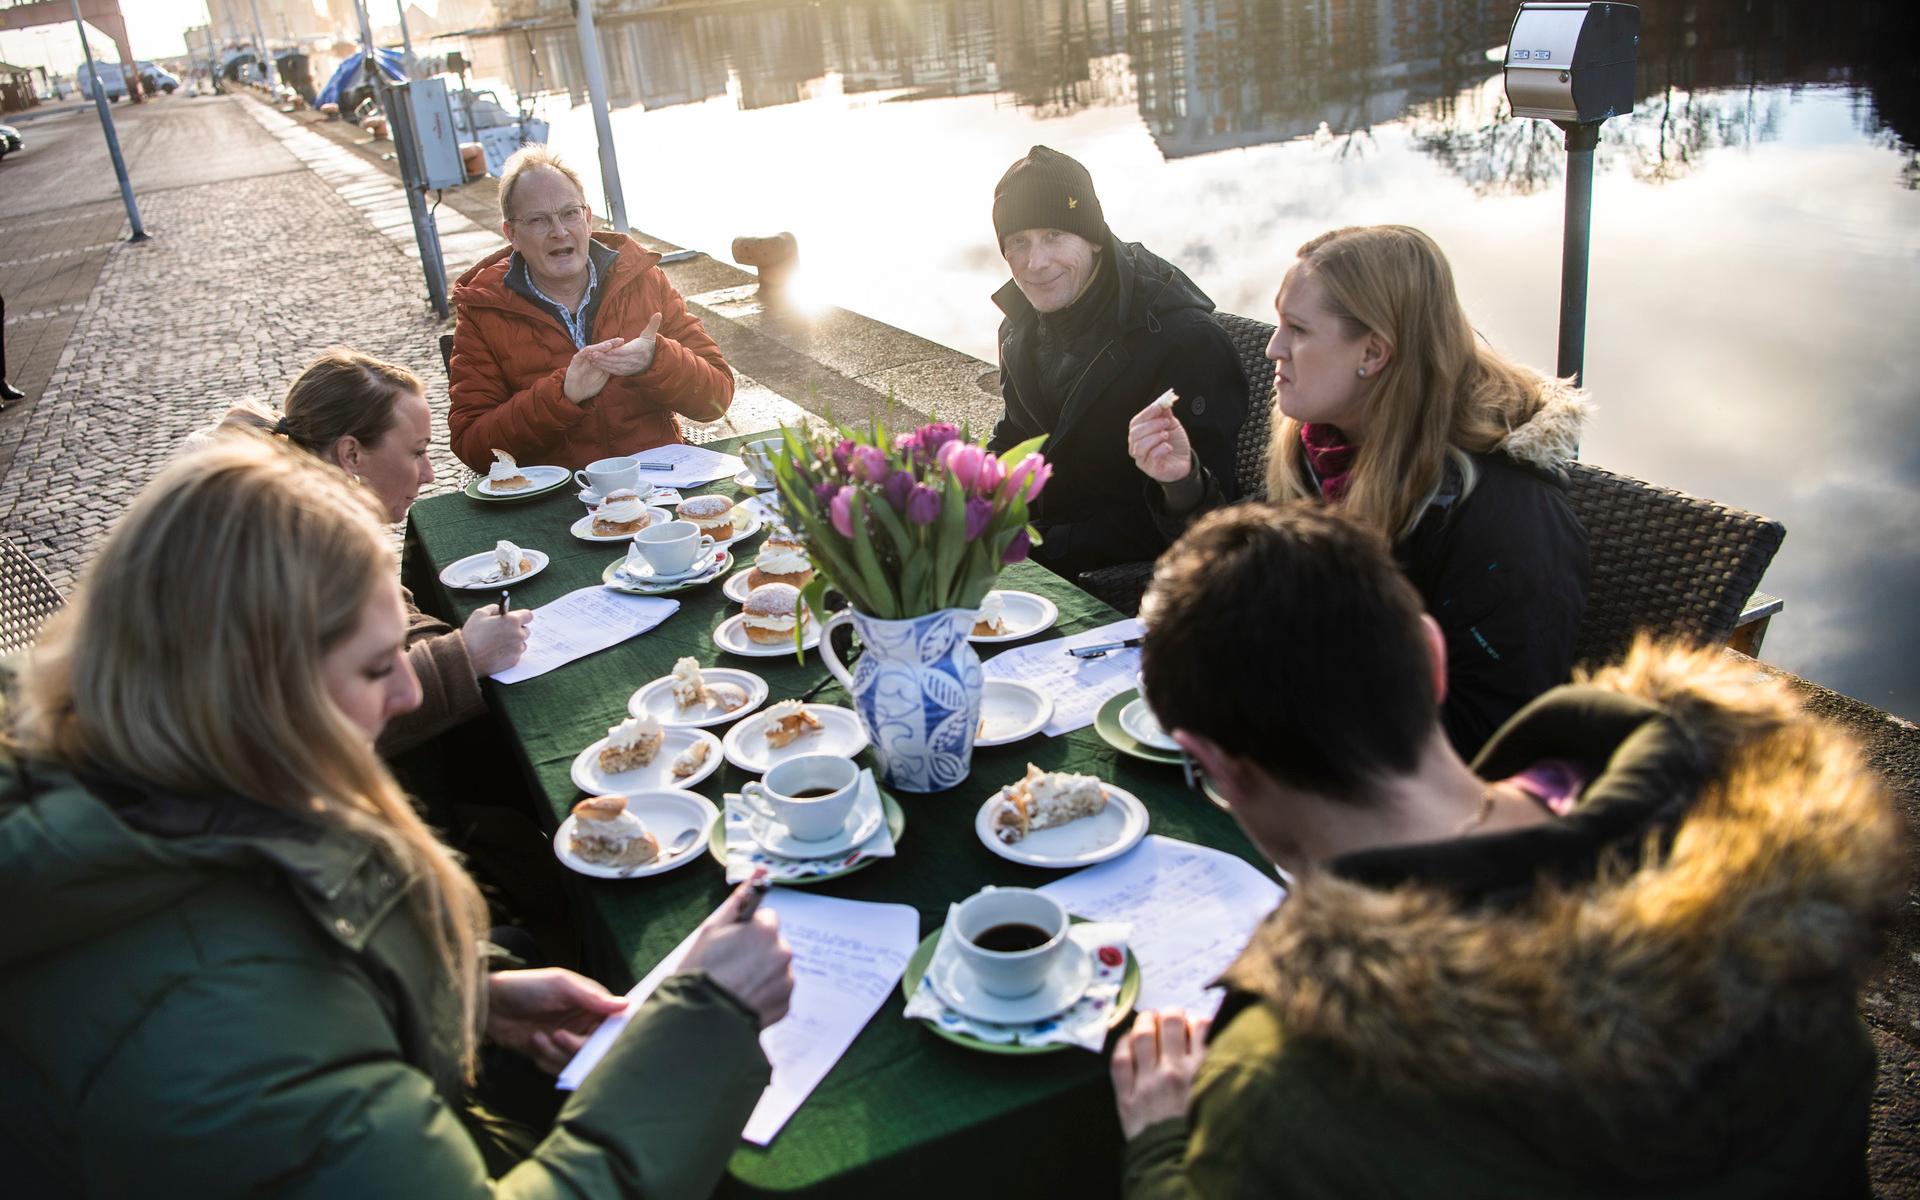 Semmeltest-fest – utomhus förstås i dessa coronatider – utanför Hallandsposten en vanlig januaridag.